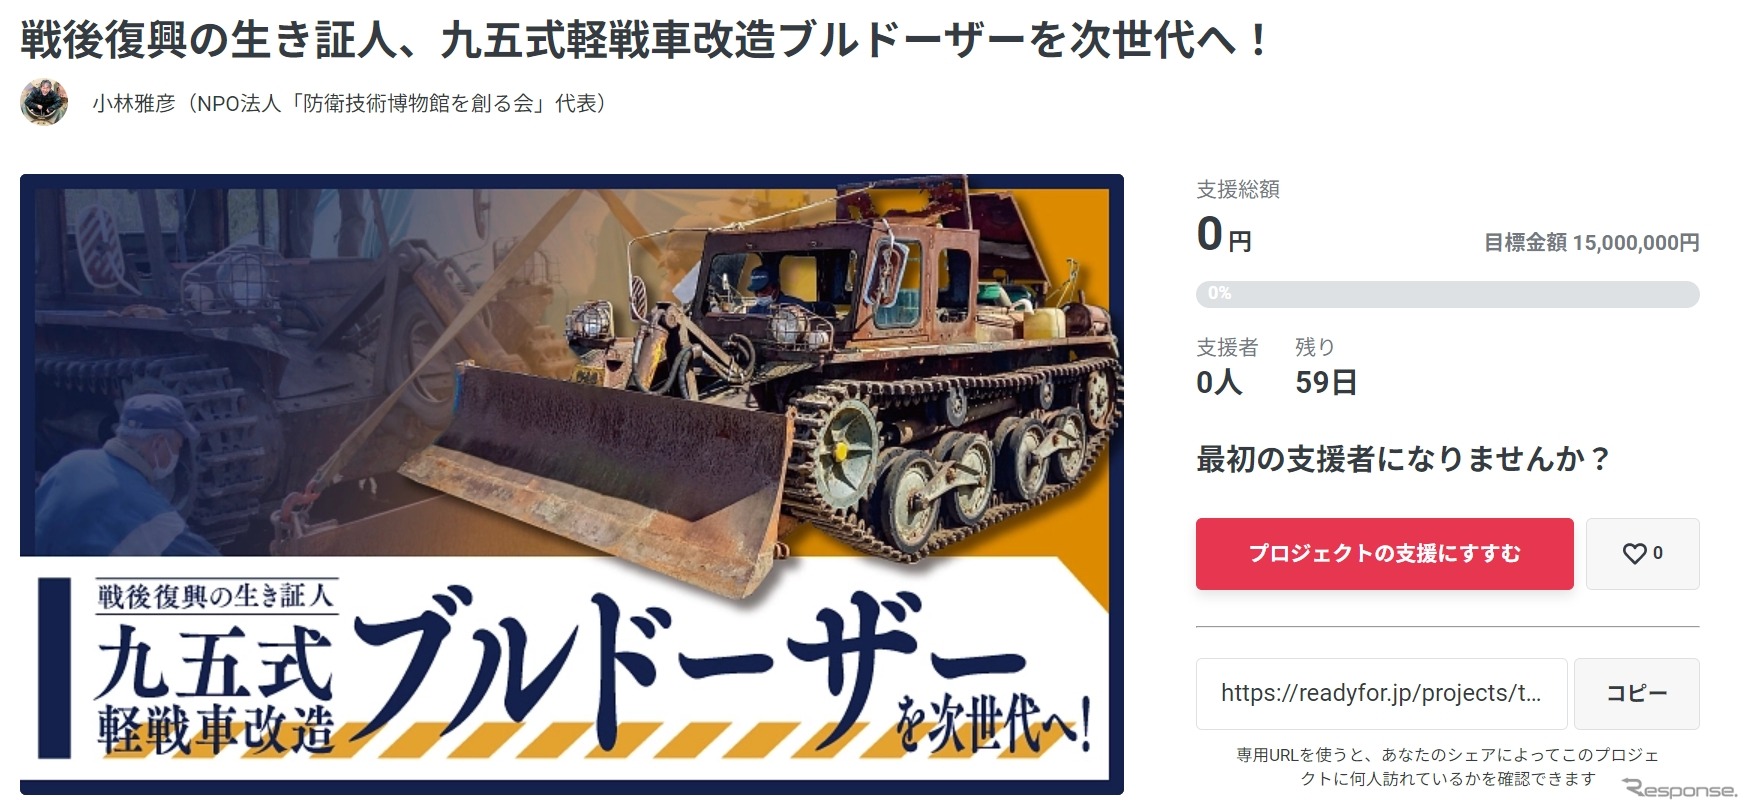 「九五式軽戦車改造ブルドーザー」の修復・調査を行ない、次の世代へ残すためのクラウドファンディング